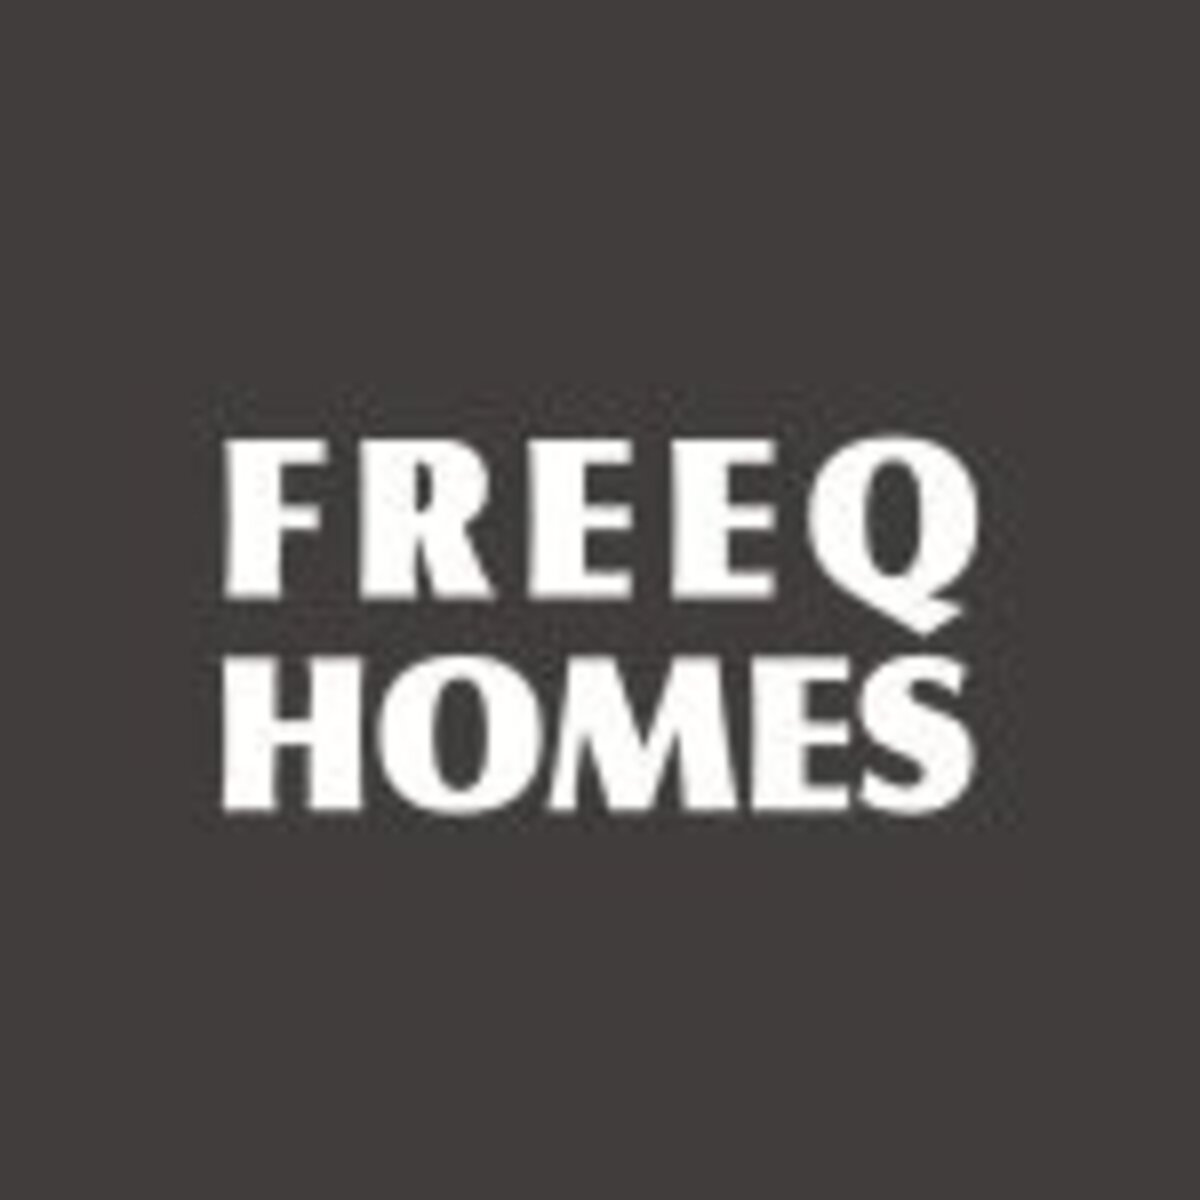 FREEQ HOMES（フリークホームズ）のロゴ